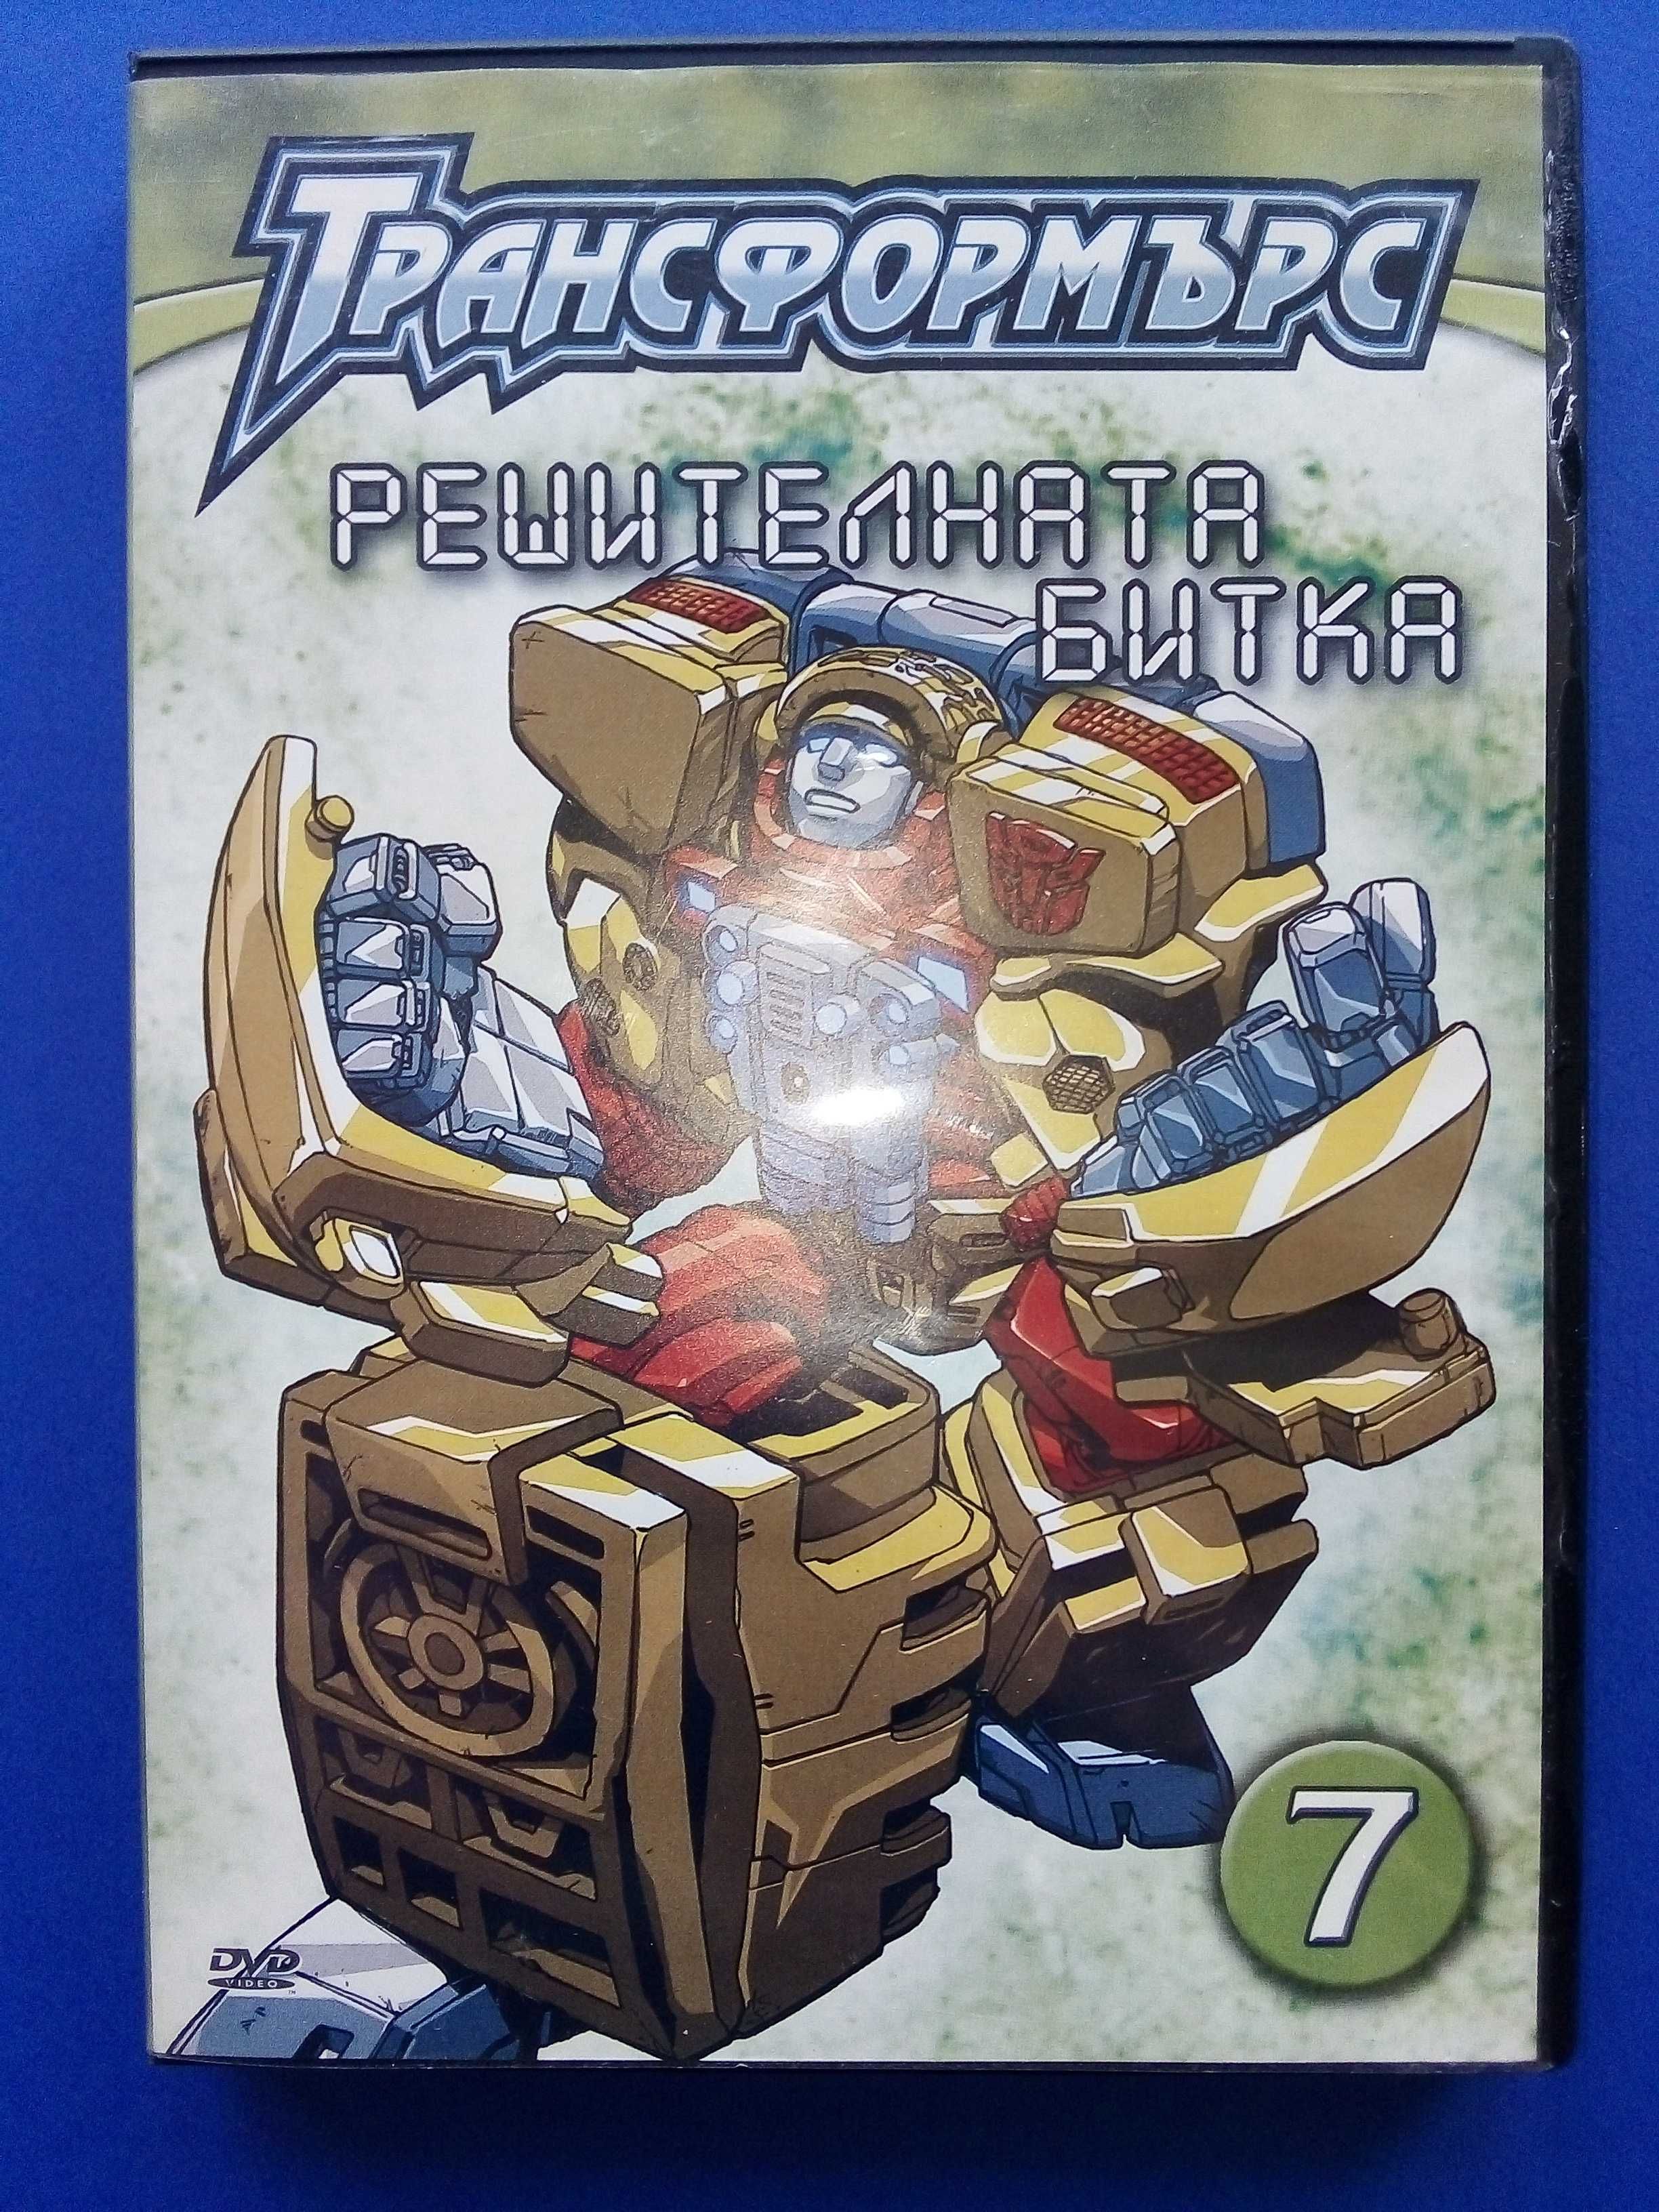 DVD "Трансформърс №7 и №12" - 2007г.